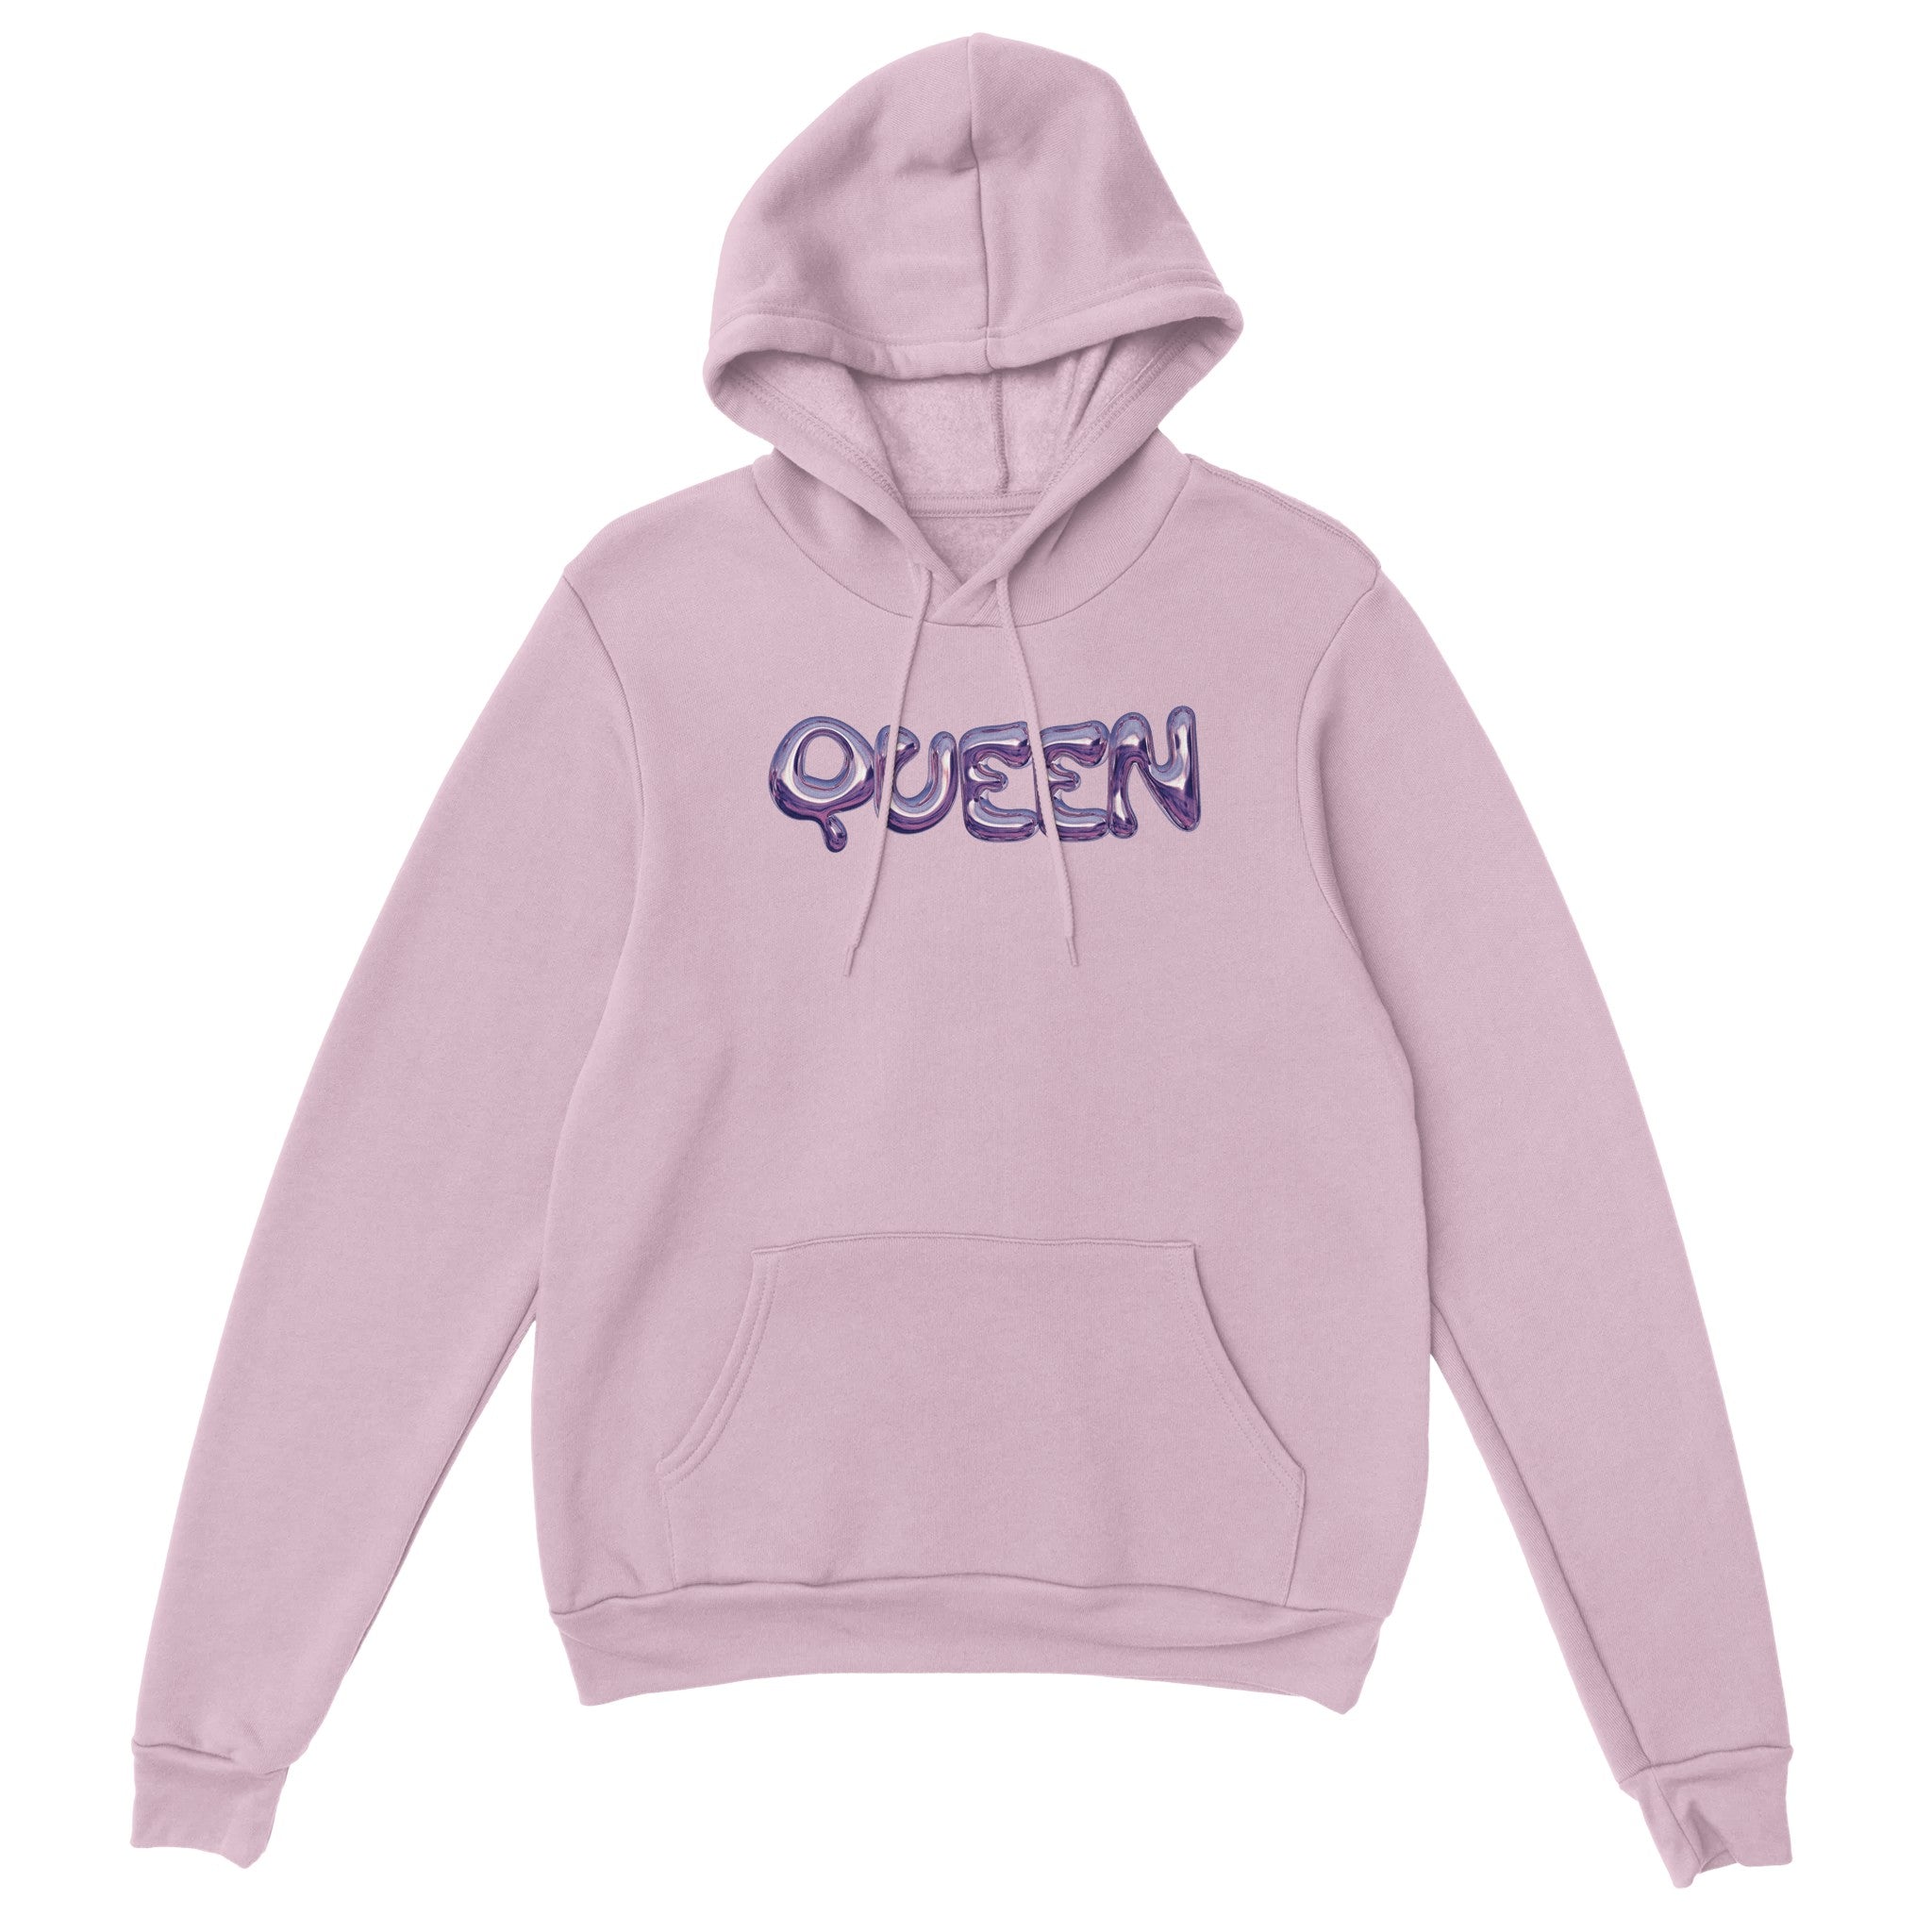 'Queen' hoodie - In Print We Trust